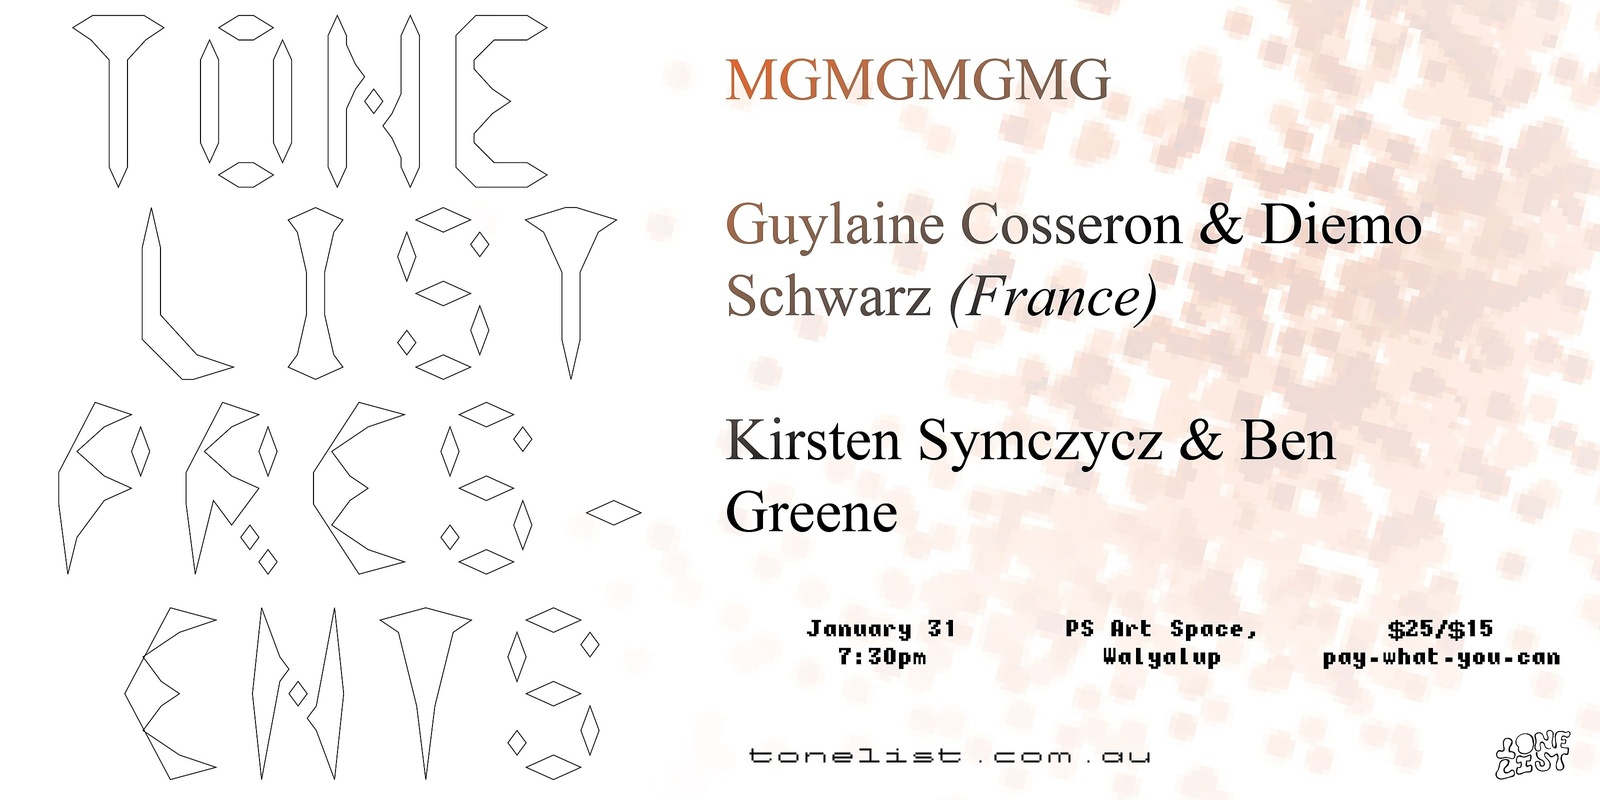 Banner image for Tone List Presents #3: Guylaine Cosseron & Diemo Schwarz (France), MGMGMGMG, Kirsten Symczycz & Ben Greene